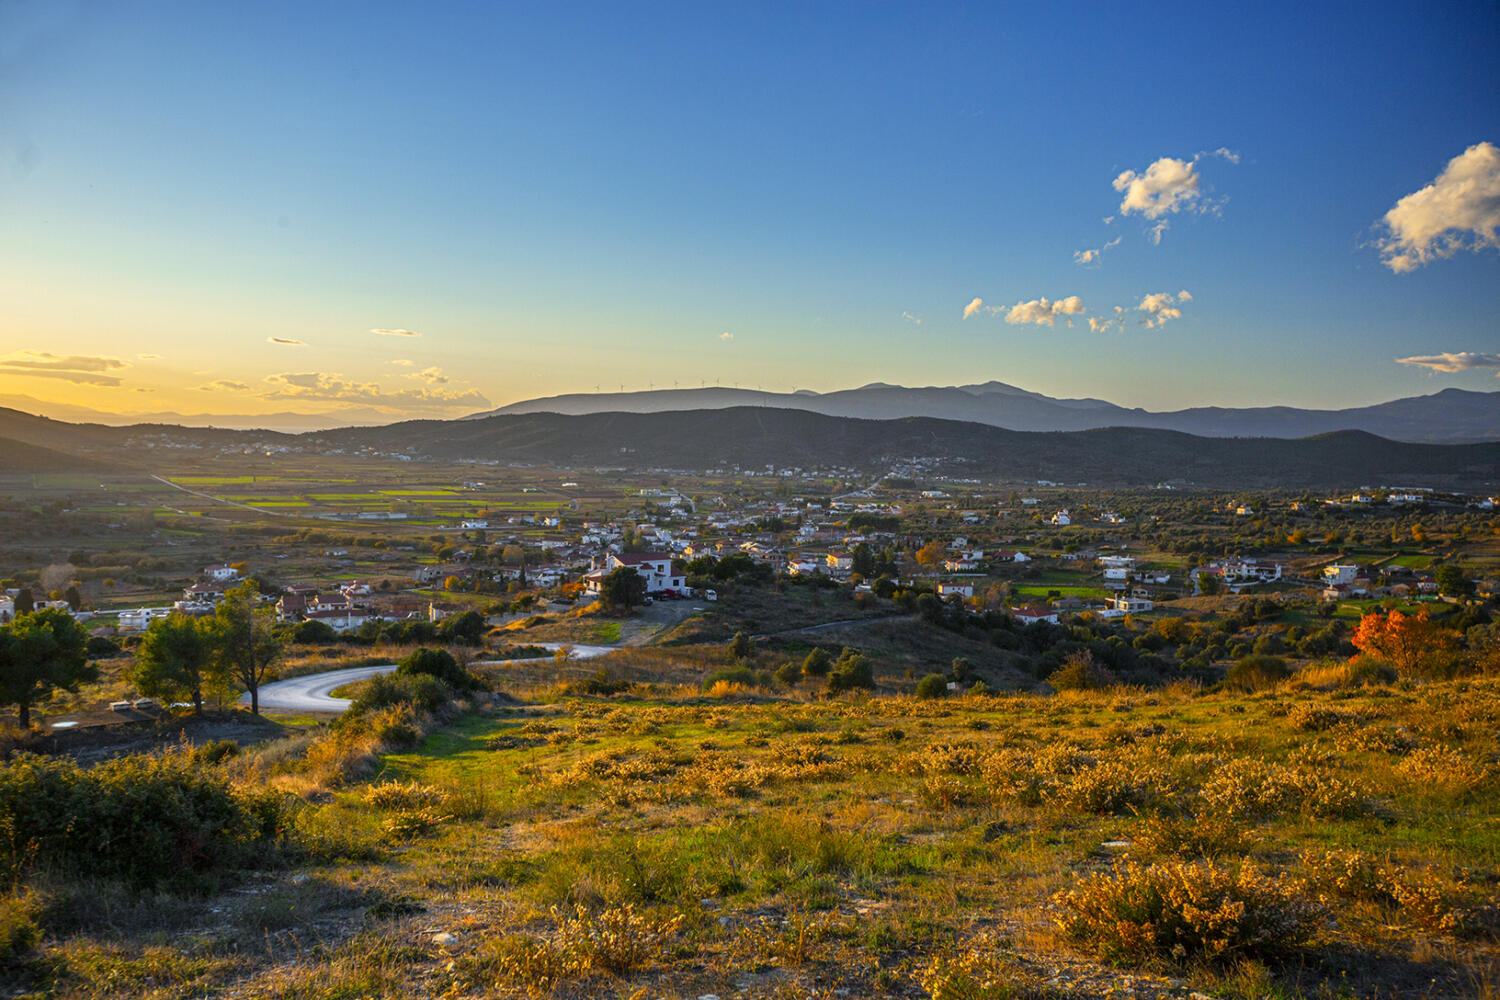 Χωριό Κριεζά. Φωτογραφία: ©Βασίλης Συκάς, για τον Δήμο Κύμης-Αλιβερίου